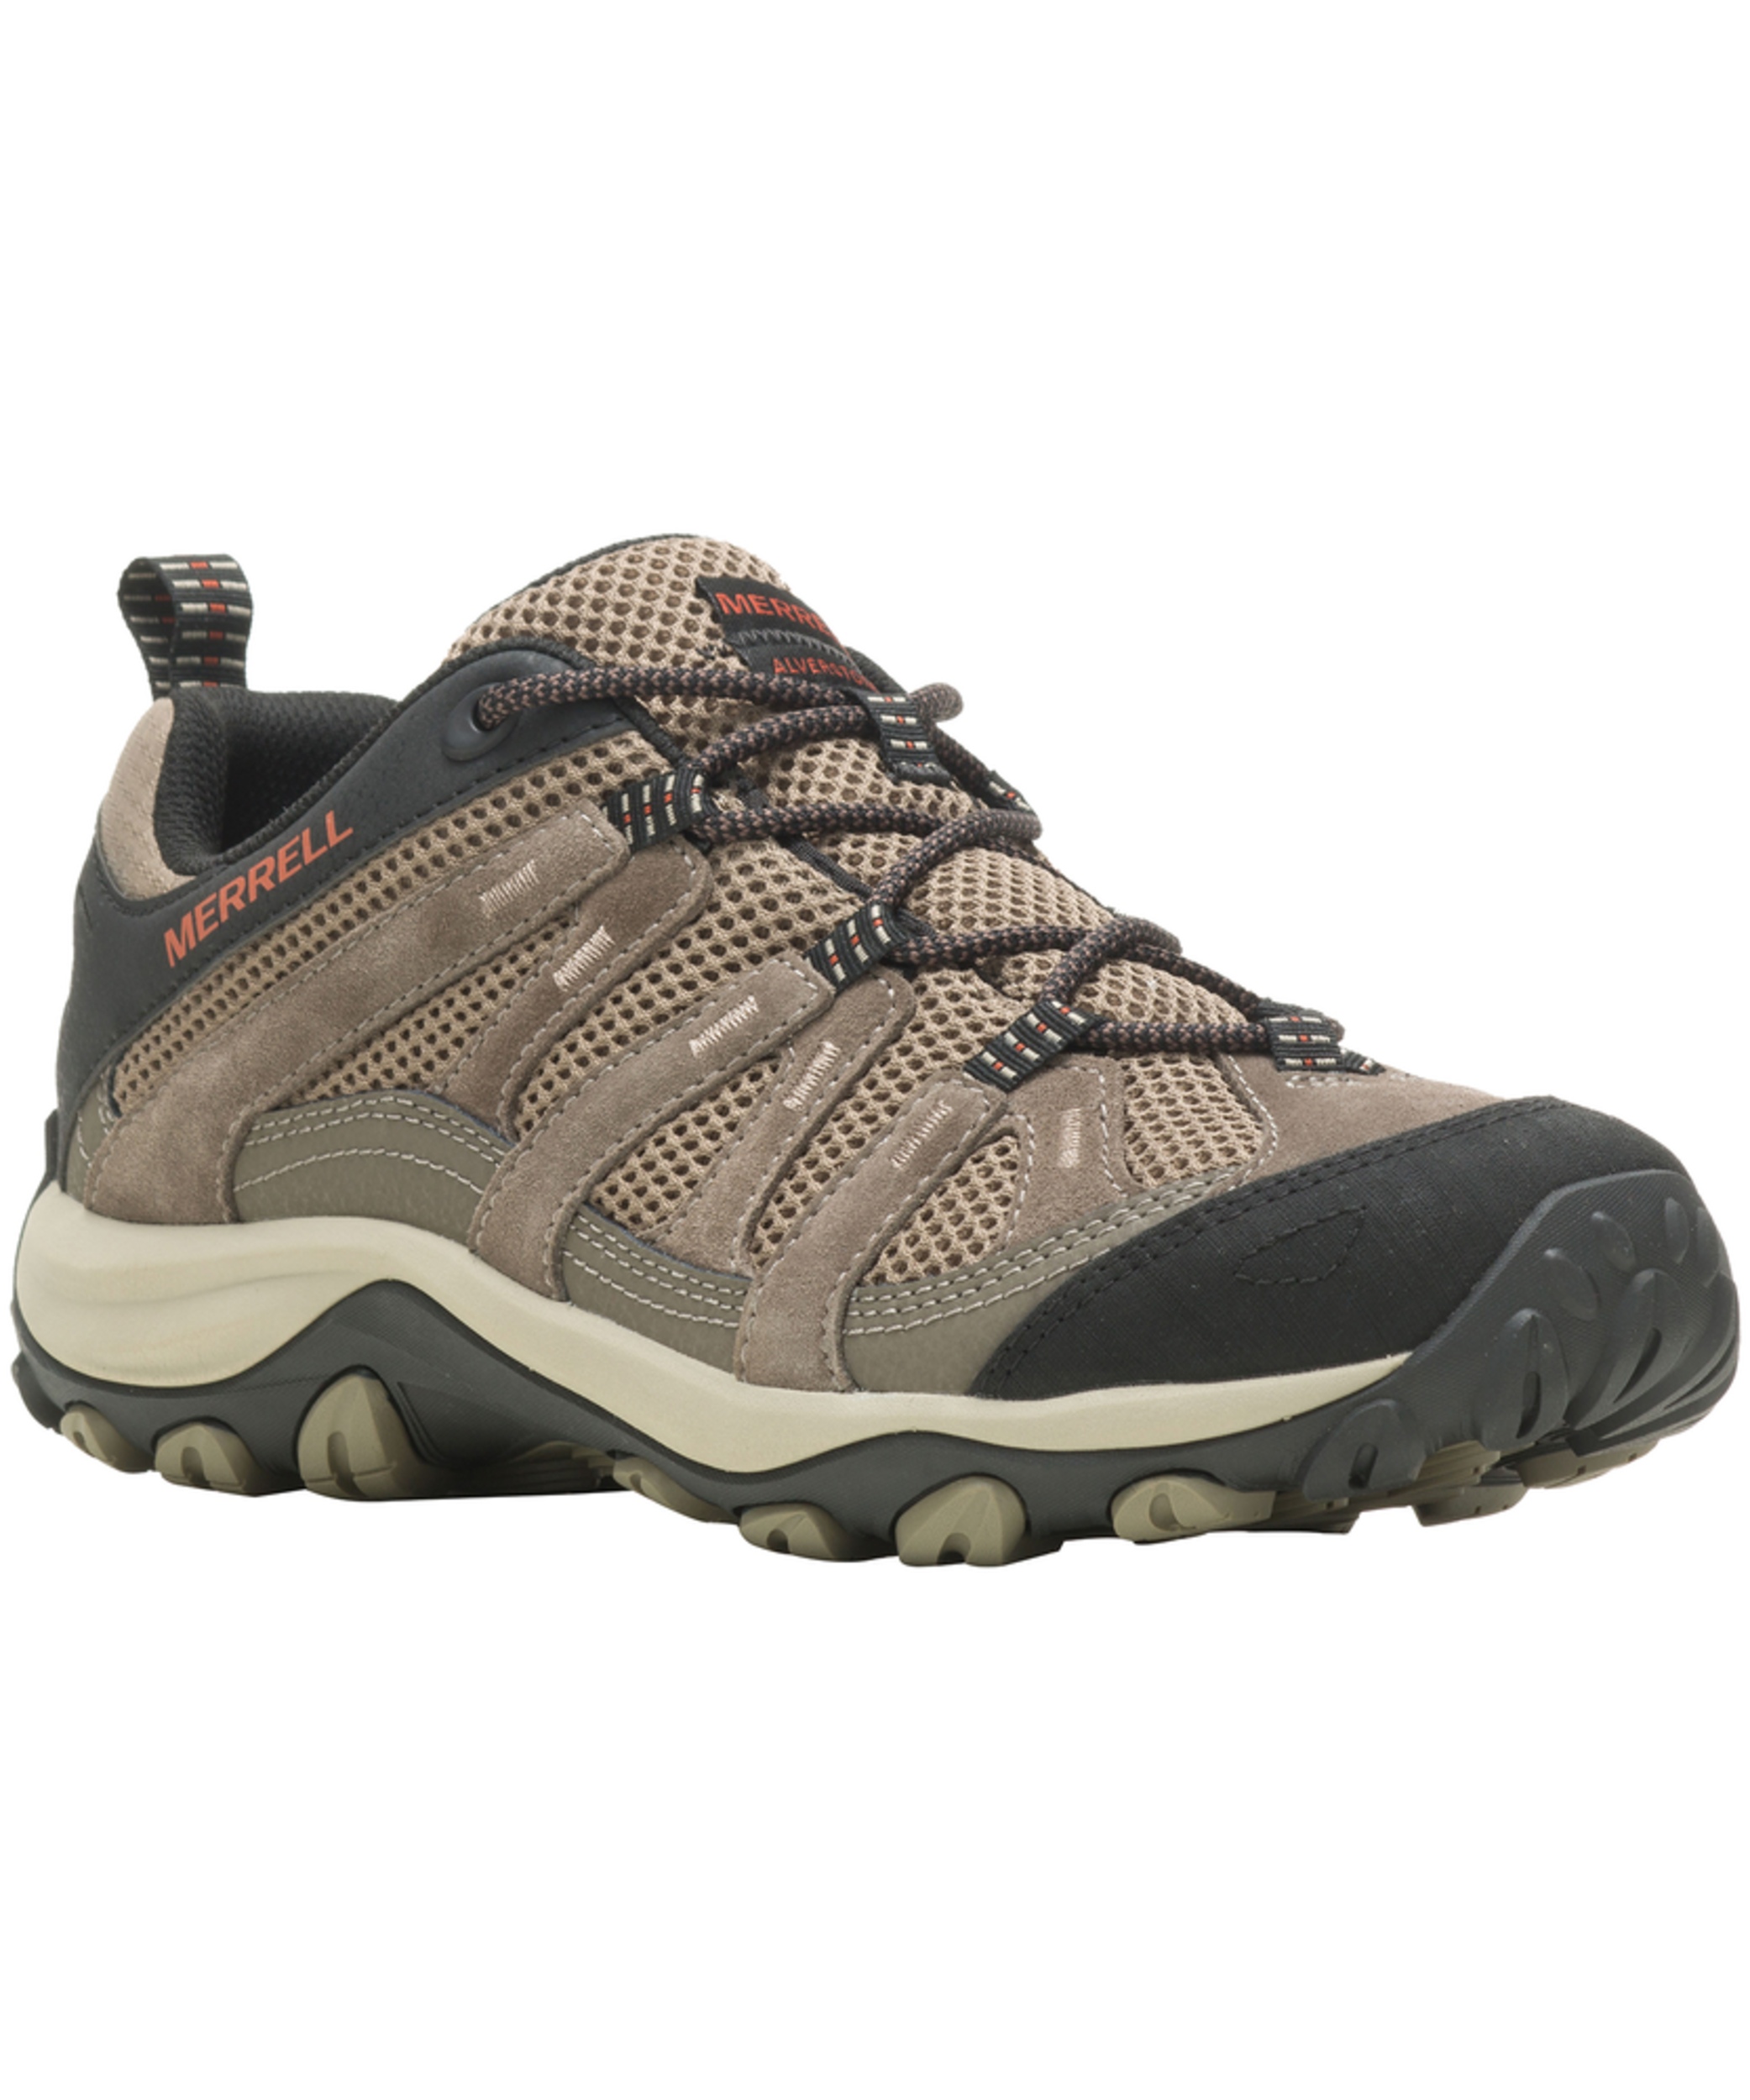 Merrell Men's Alverstone 2 Hiking Shoes - Boulder/Brindle | Marks